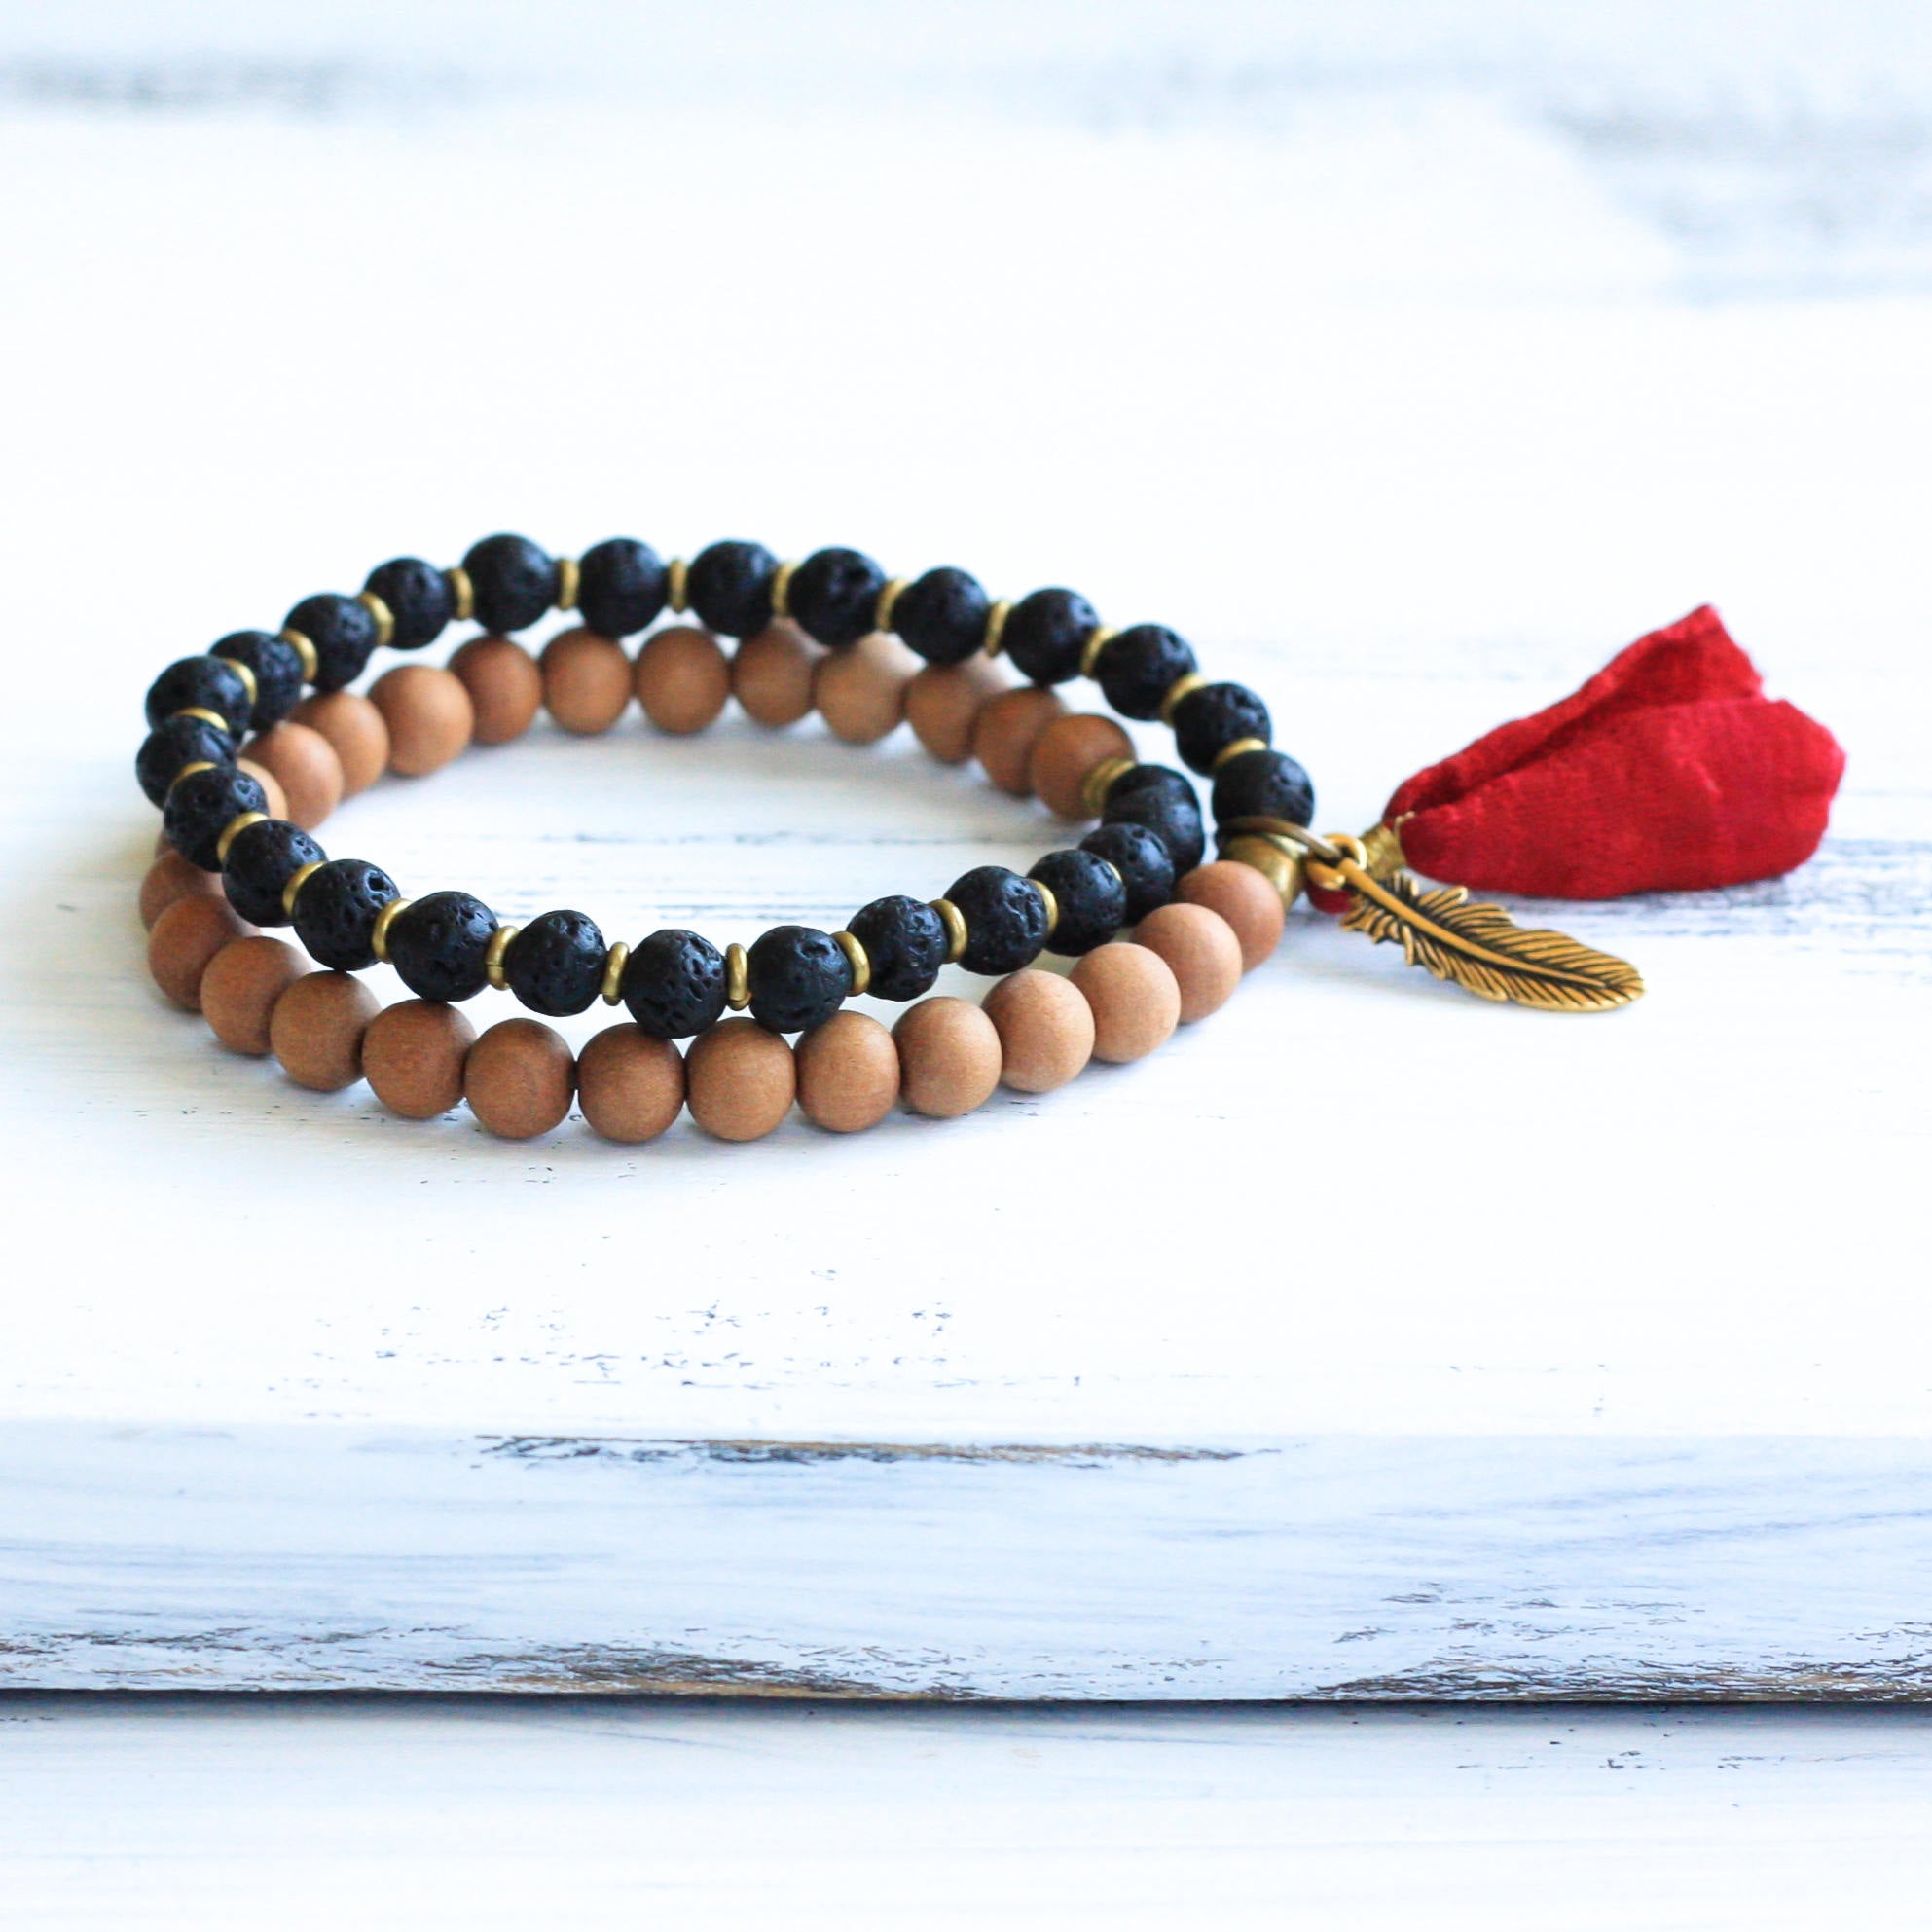 Basalt Sandalwood mala prayer bead bracelet with tassel